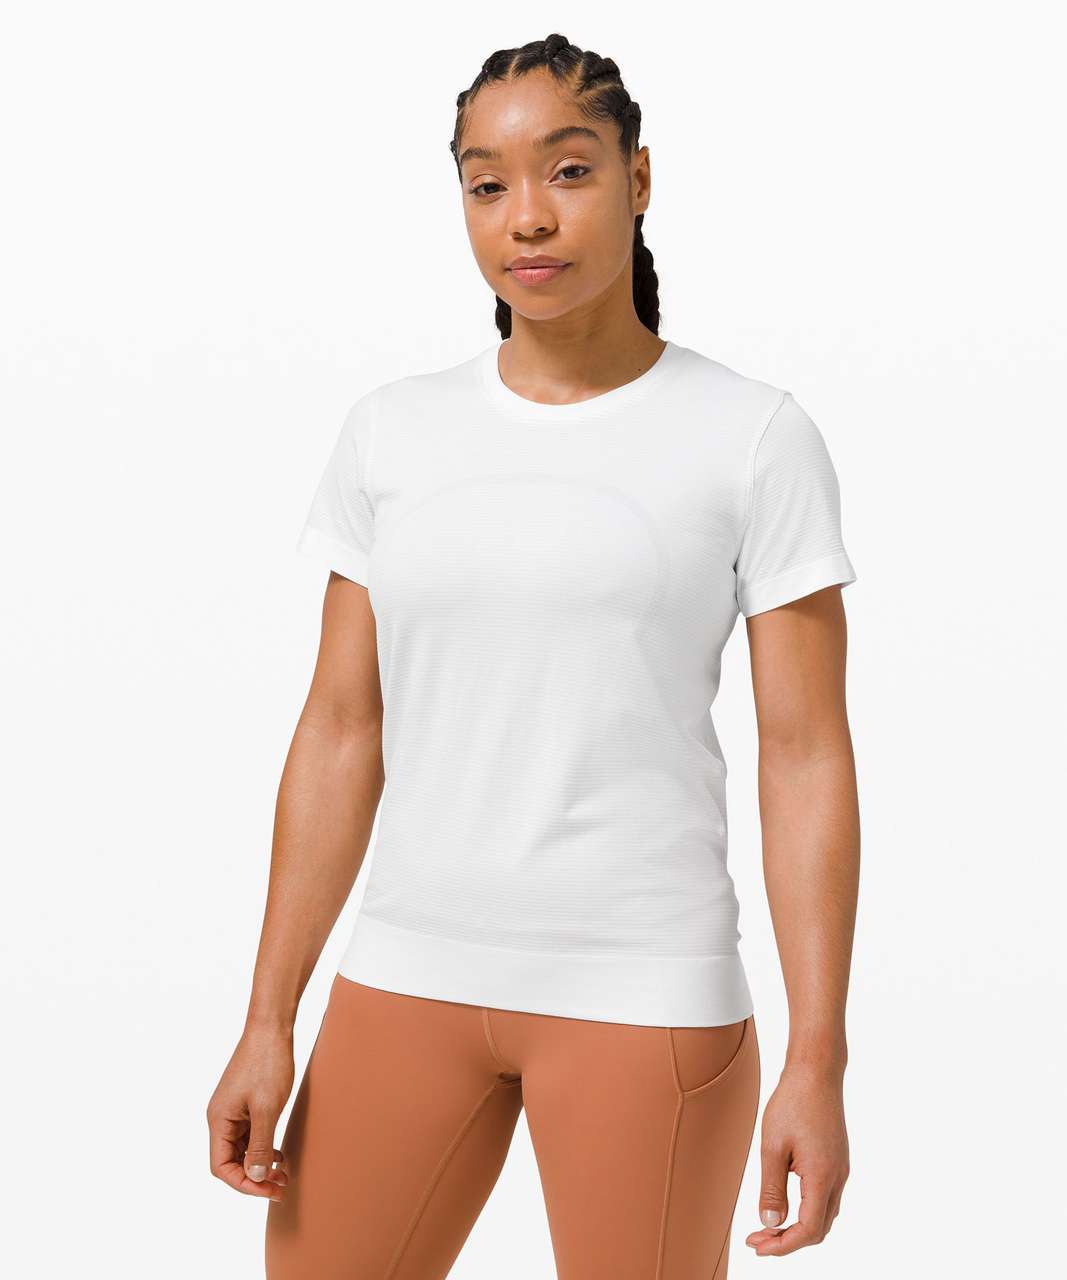 Lululemon Swiftly Breathe Relaxed-Fit Short Sleeve Shirt White